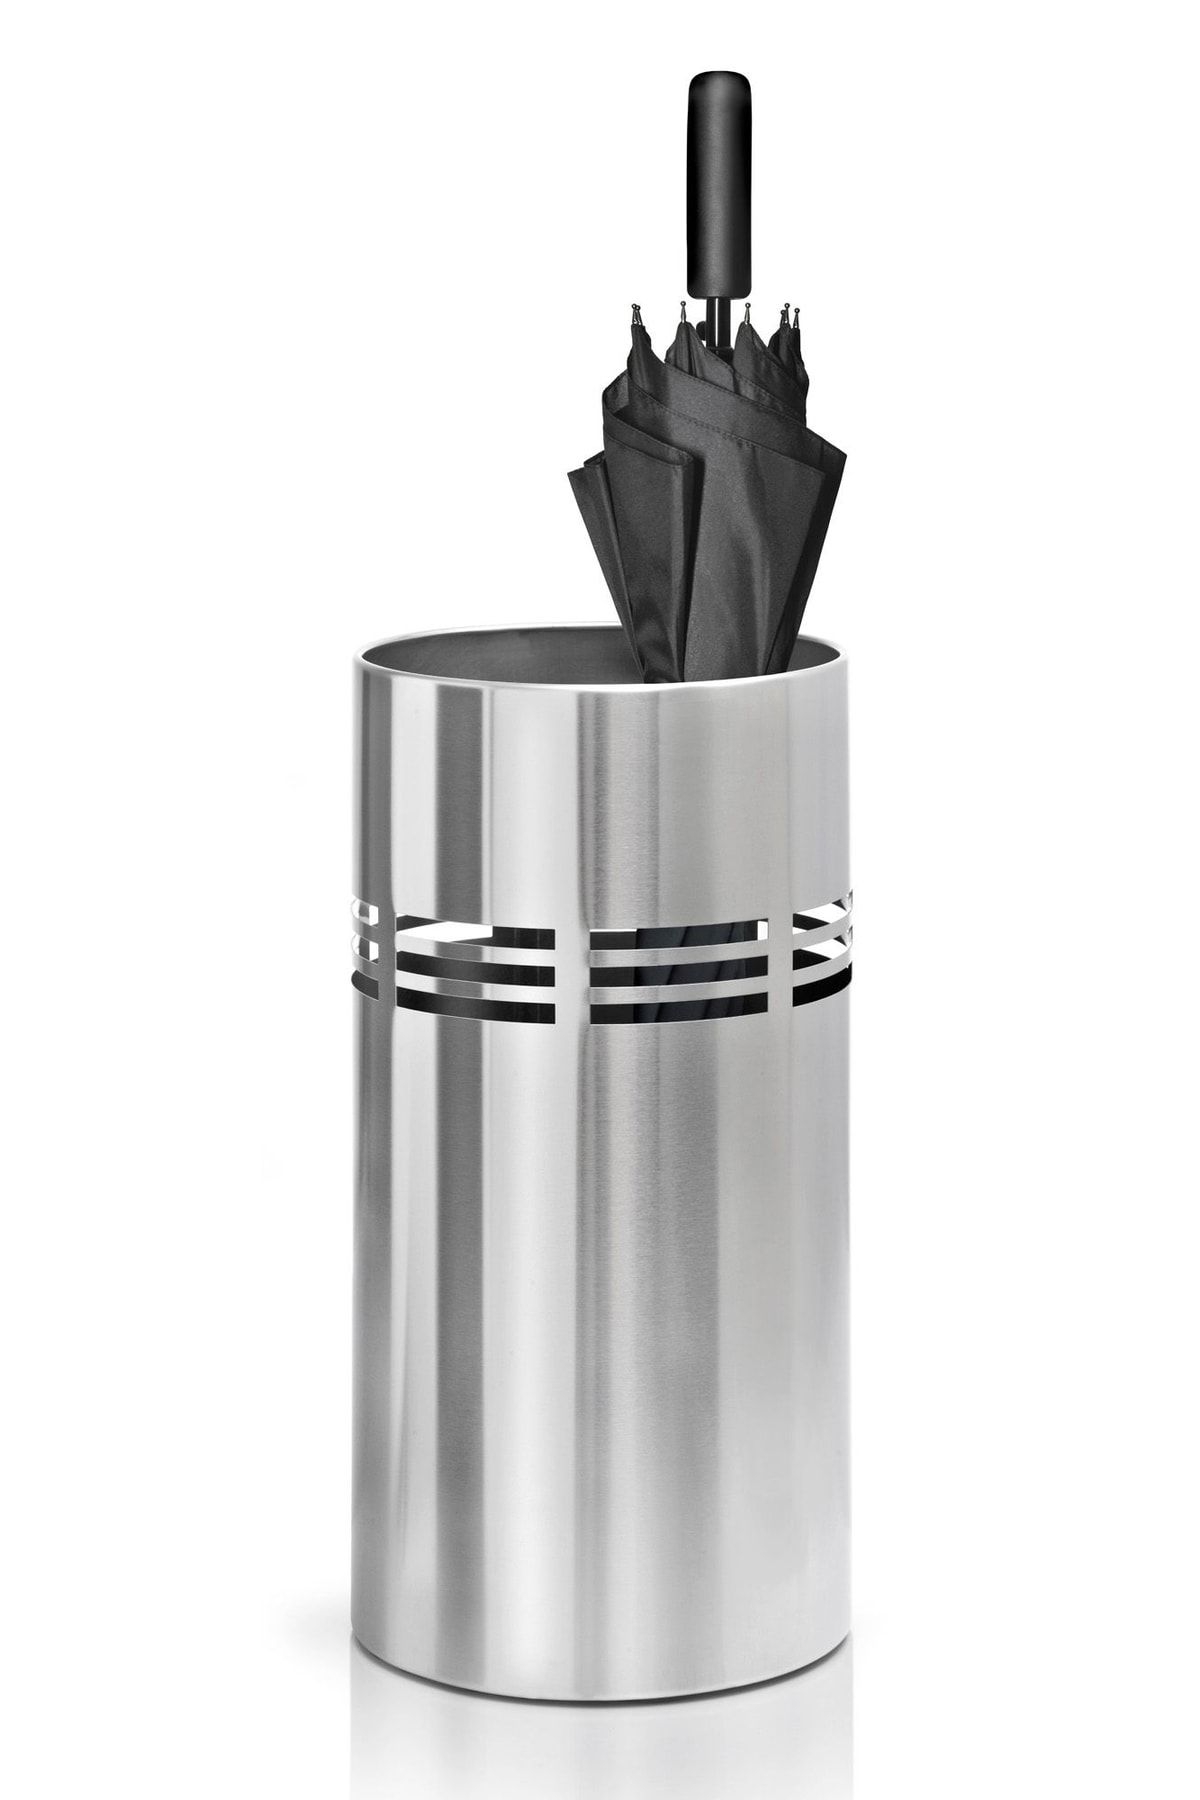 Ovata -106 Paslanmaz Çelik, Metal Tasarım Şemsiyelik